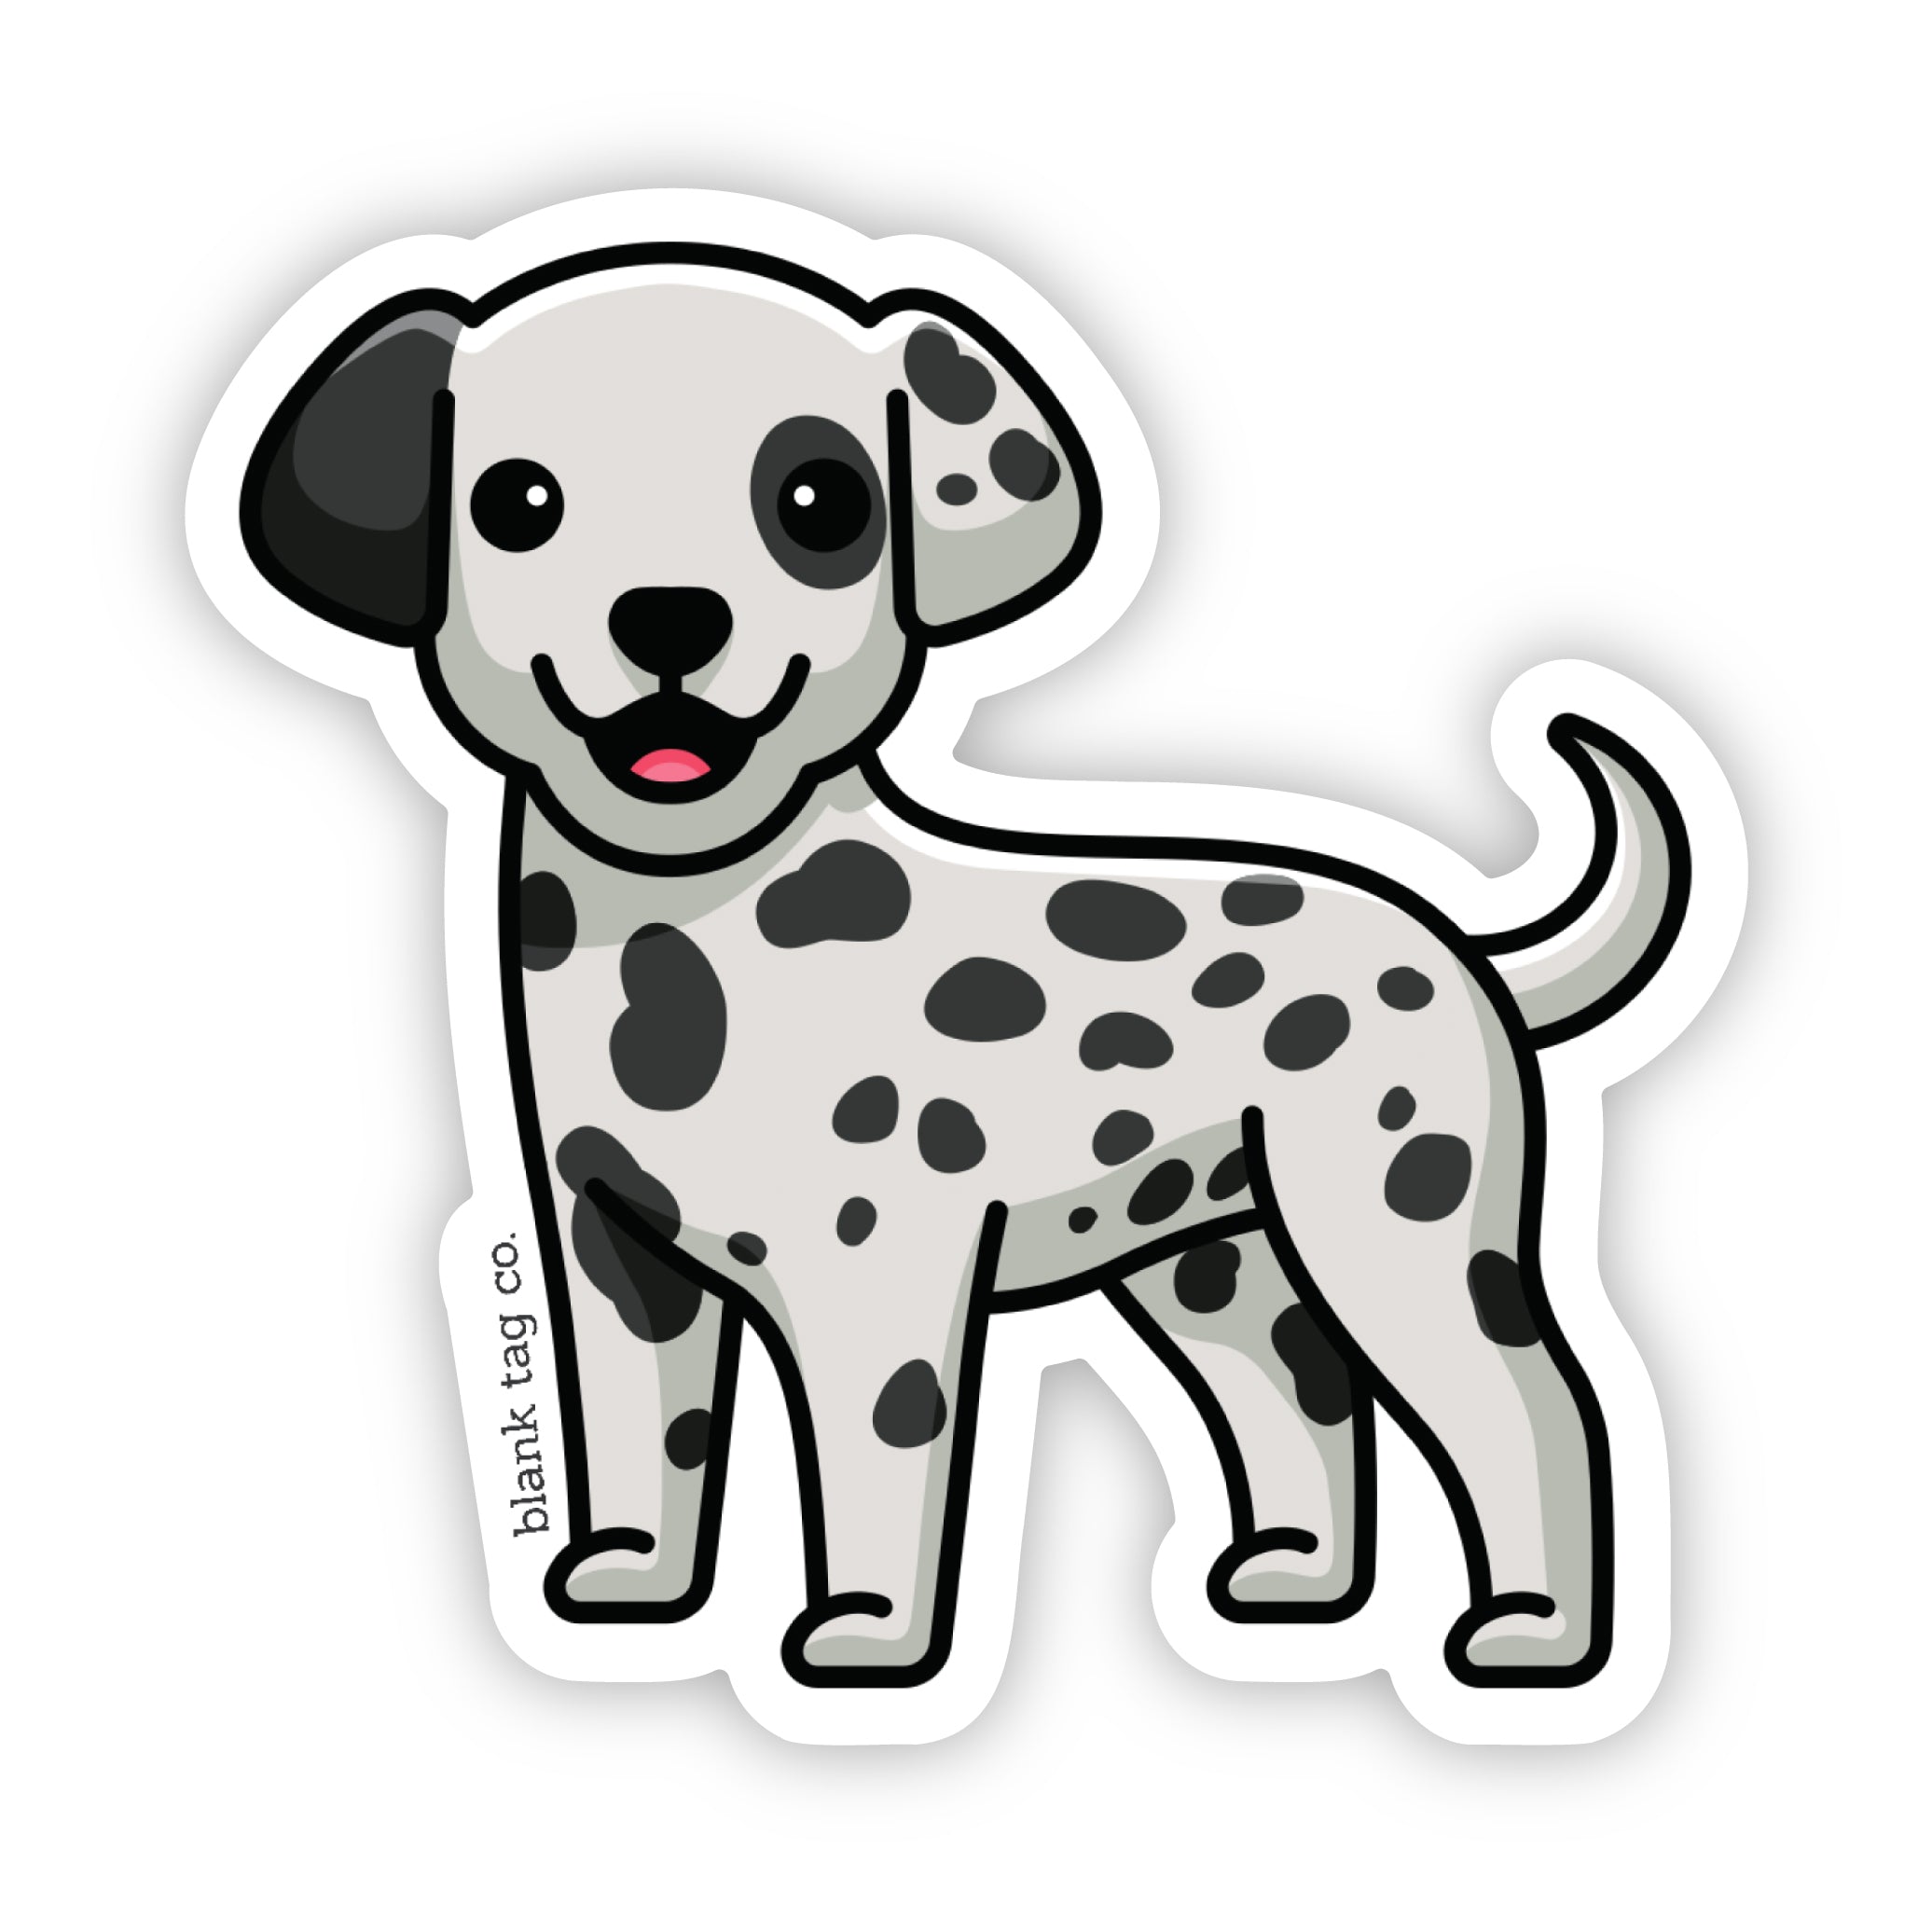 The Dalmatian Sticker